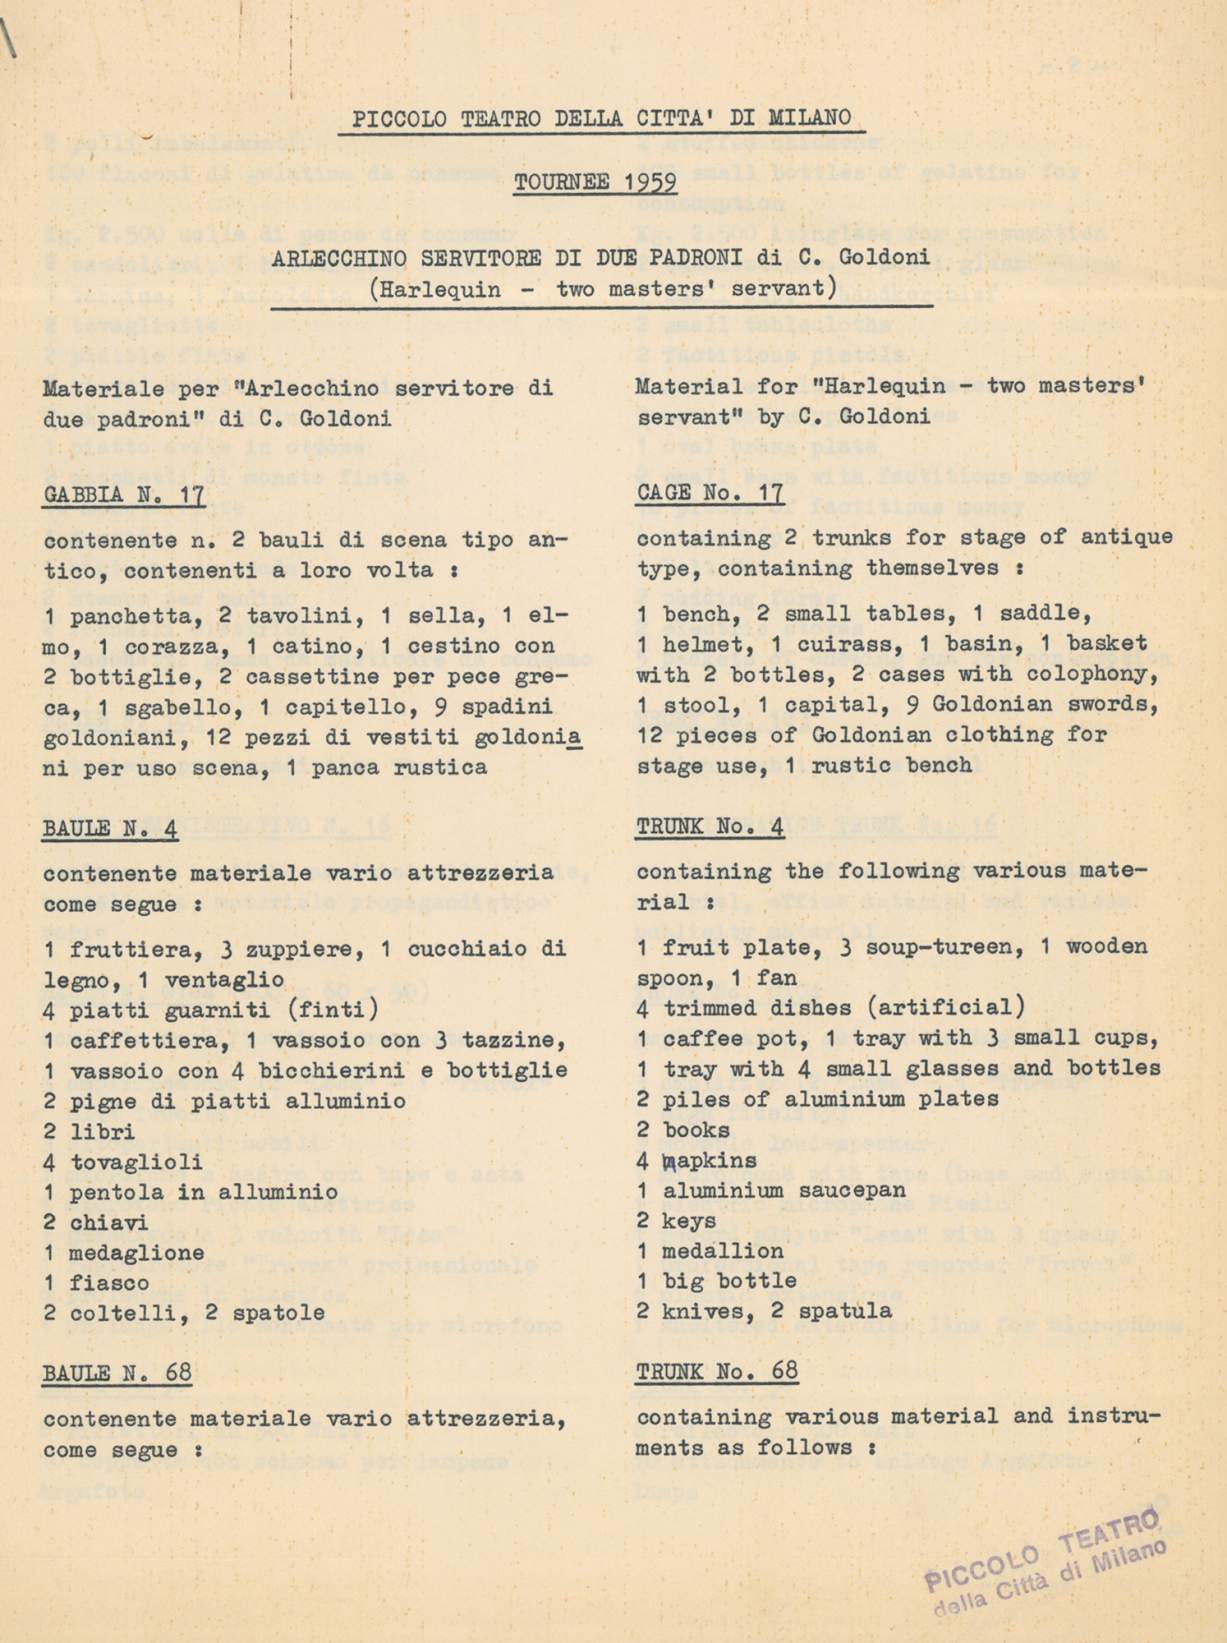 Elenco dei materiali contenuti nei bauli per la tournée negli USA - Archivio Piccolo Teatro di Milano 